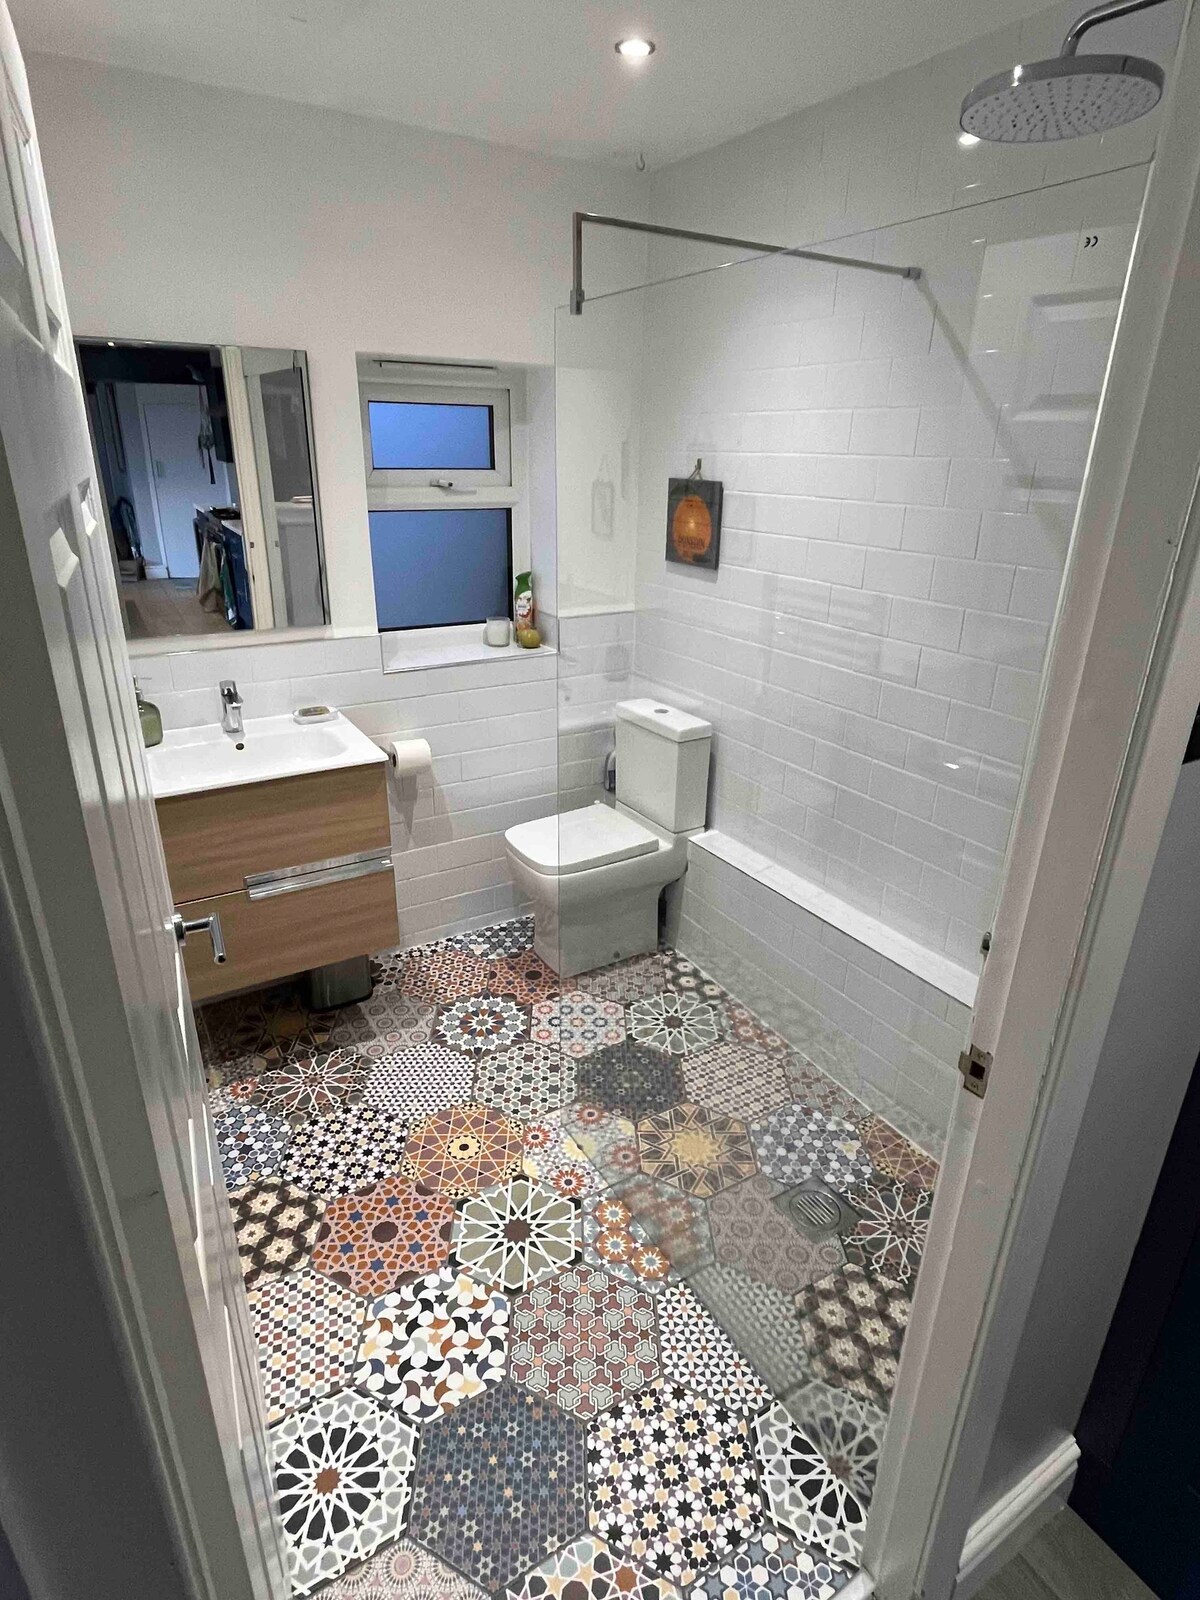 Private room & bathroom in Hawarden